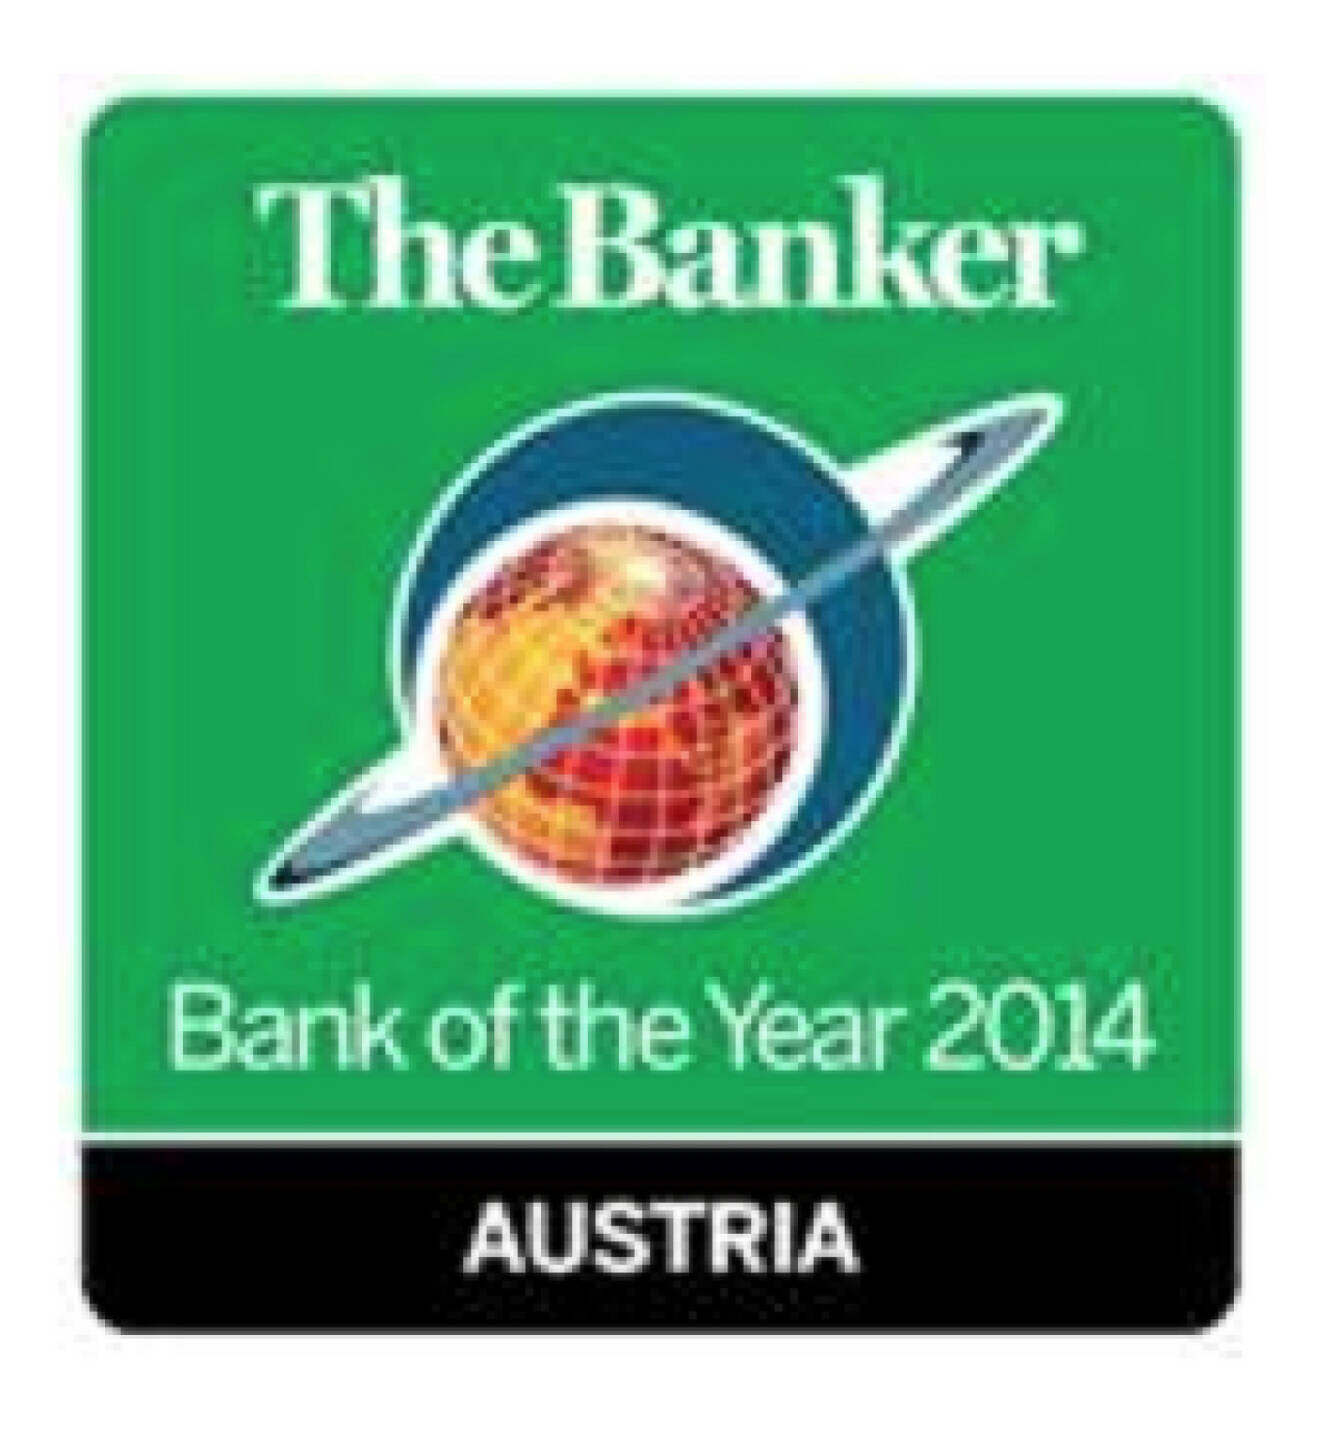 Der renommierte The Banker zeichnet jährlich die besten Banken aus und Österreicher sind stets weit vorne. Hier wirkt es so als wäre Austria die Bank of the Year (Scherz). Denn für das Hypo-Geschick sollte es keine Auszeichnung geben